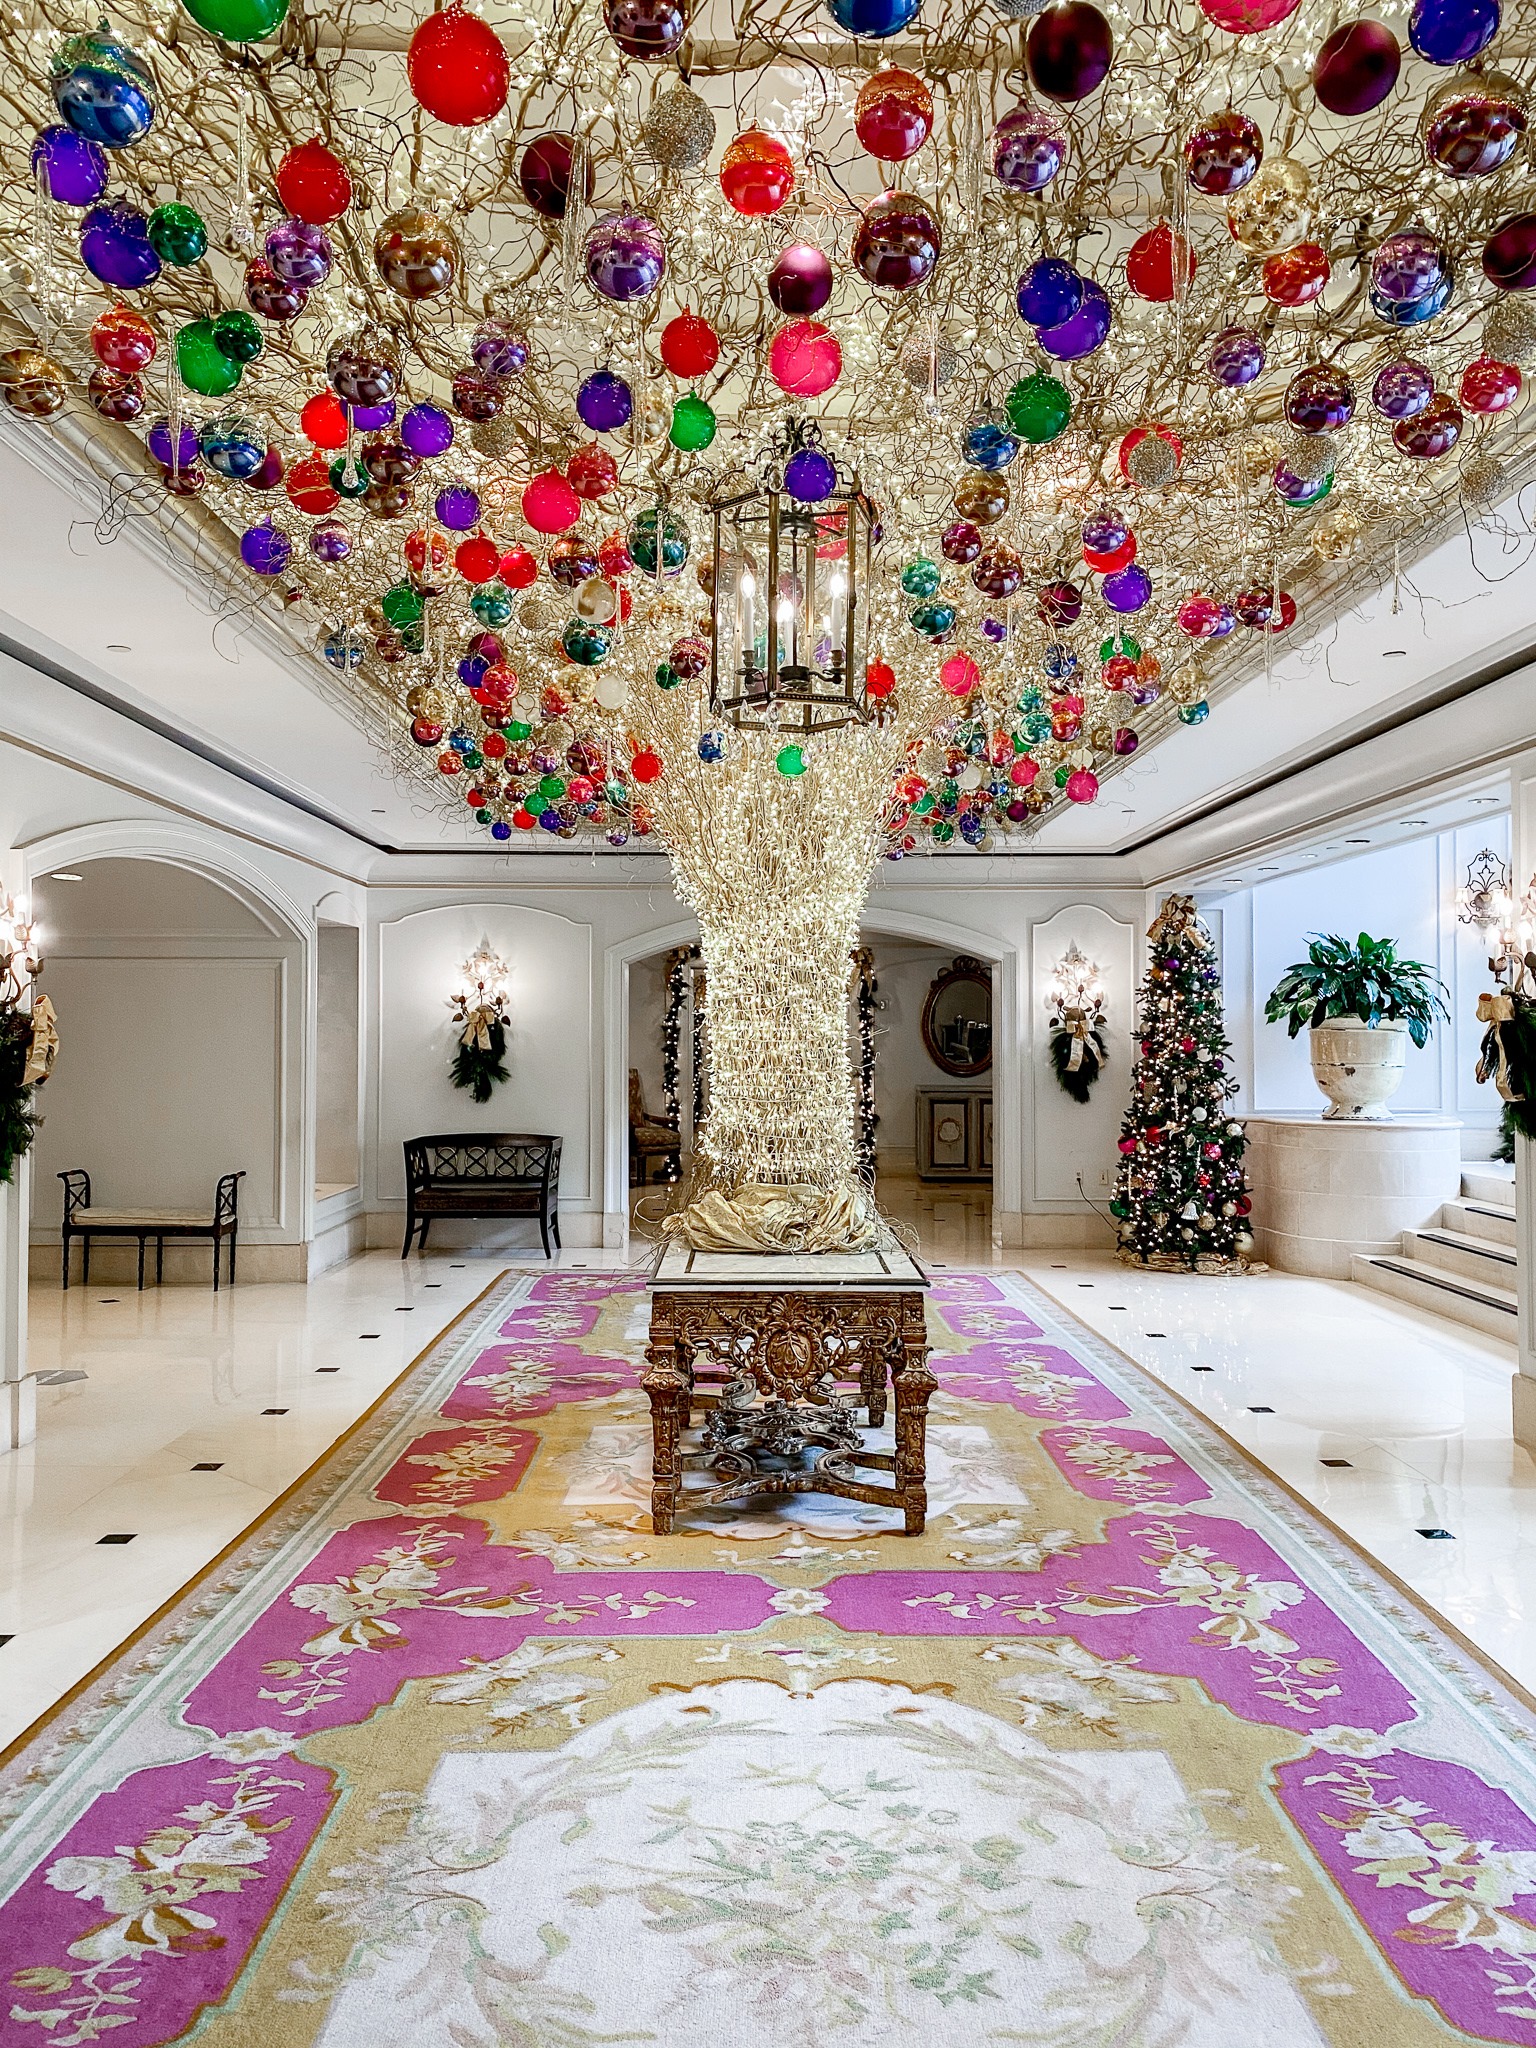 The Ritz Carlton Christmas Decor